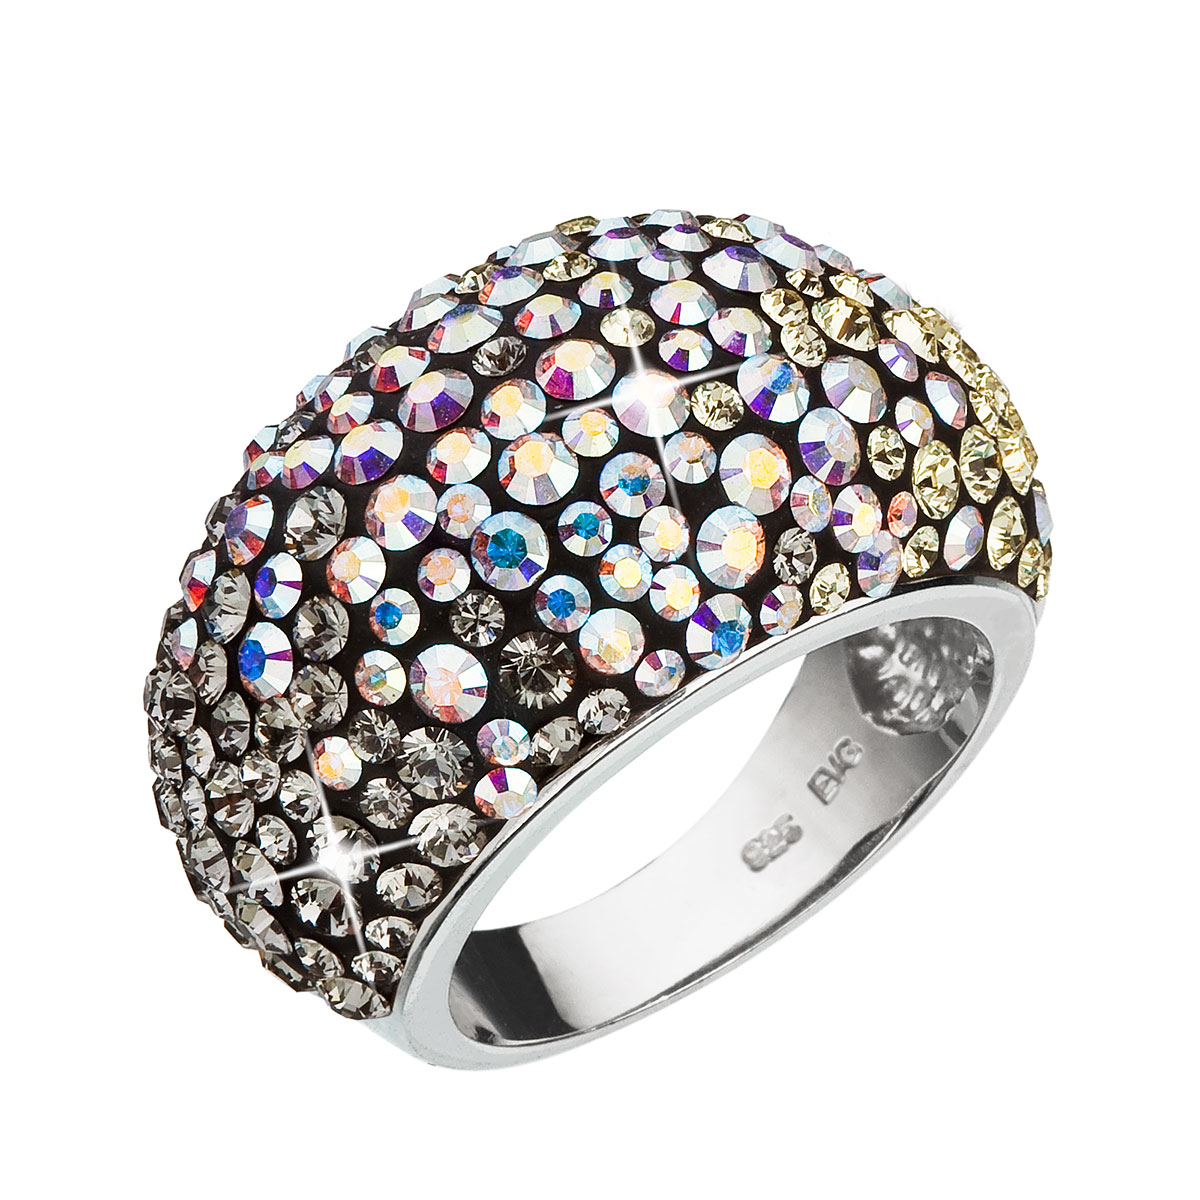 Evolution Group Stříbrný prsten s krystaly Swarovski mix barev měsíční 35028.3 moonlight